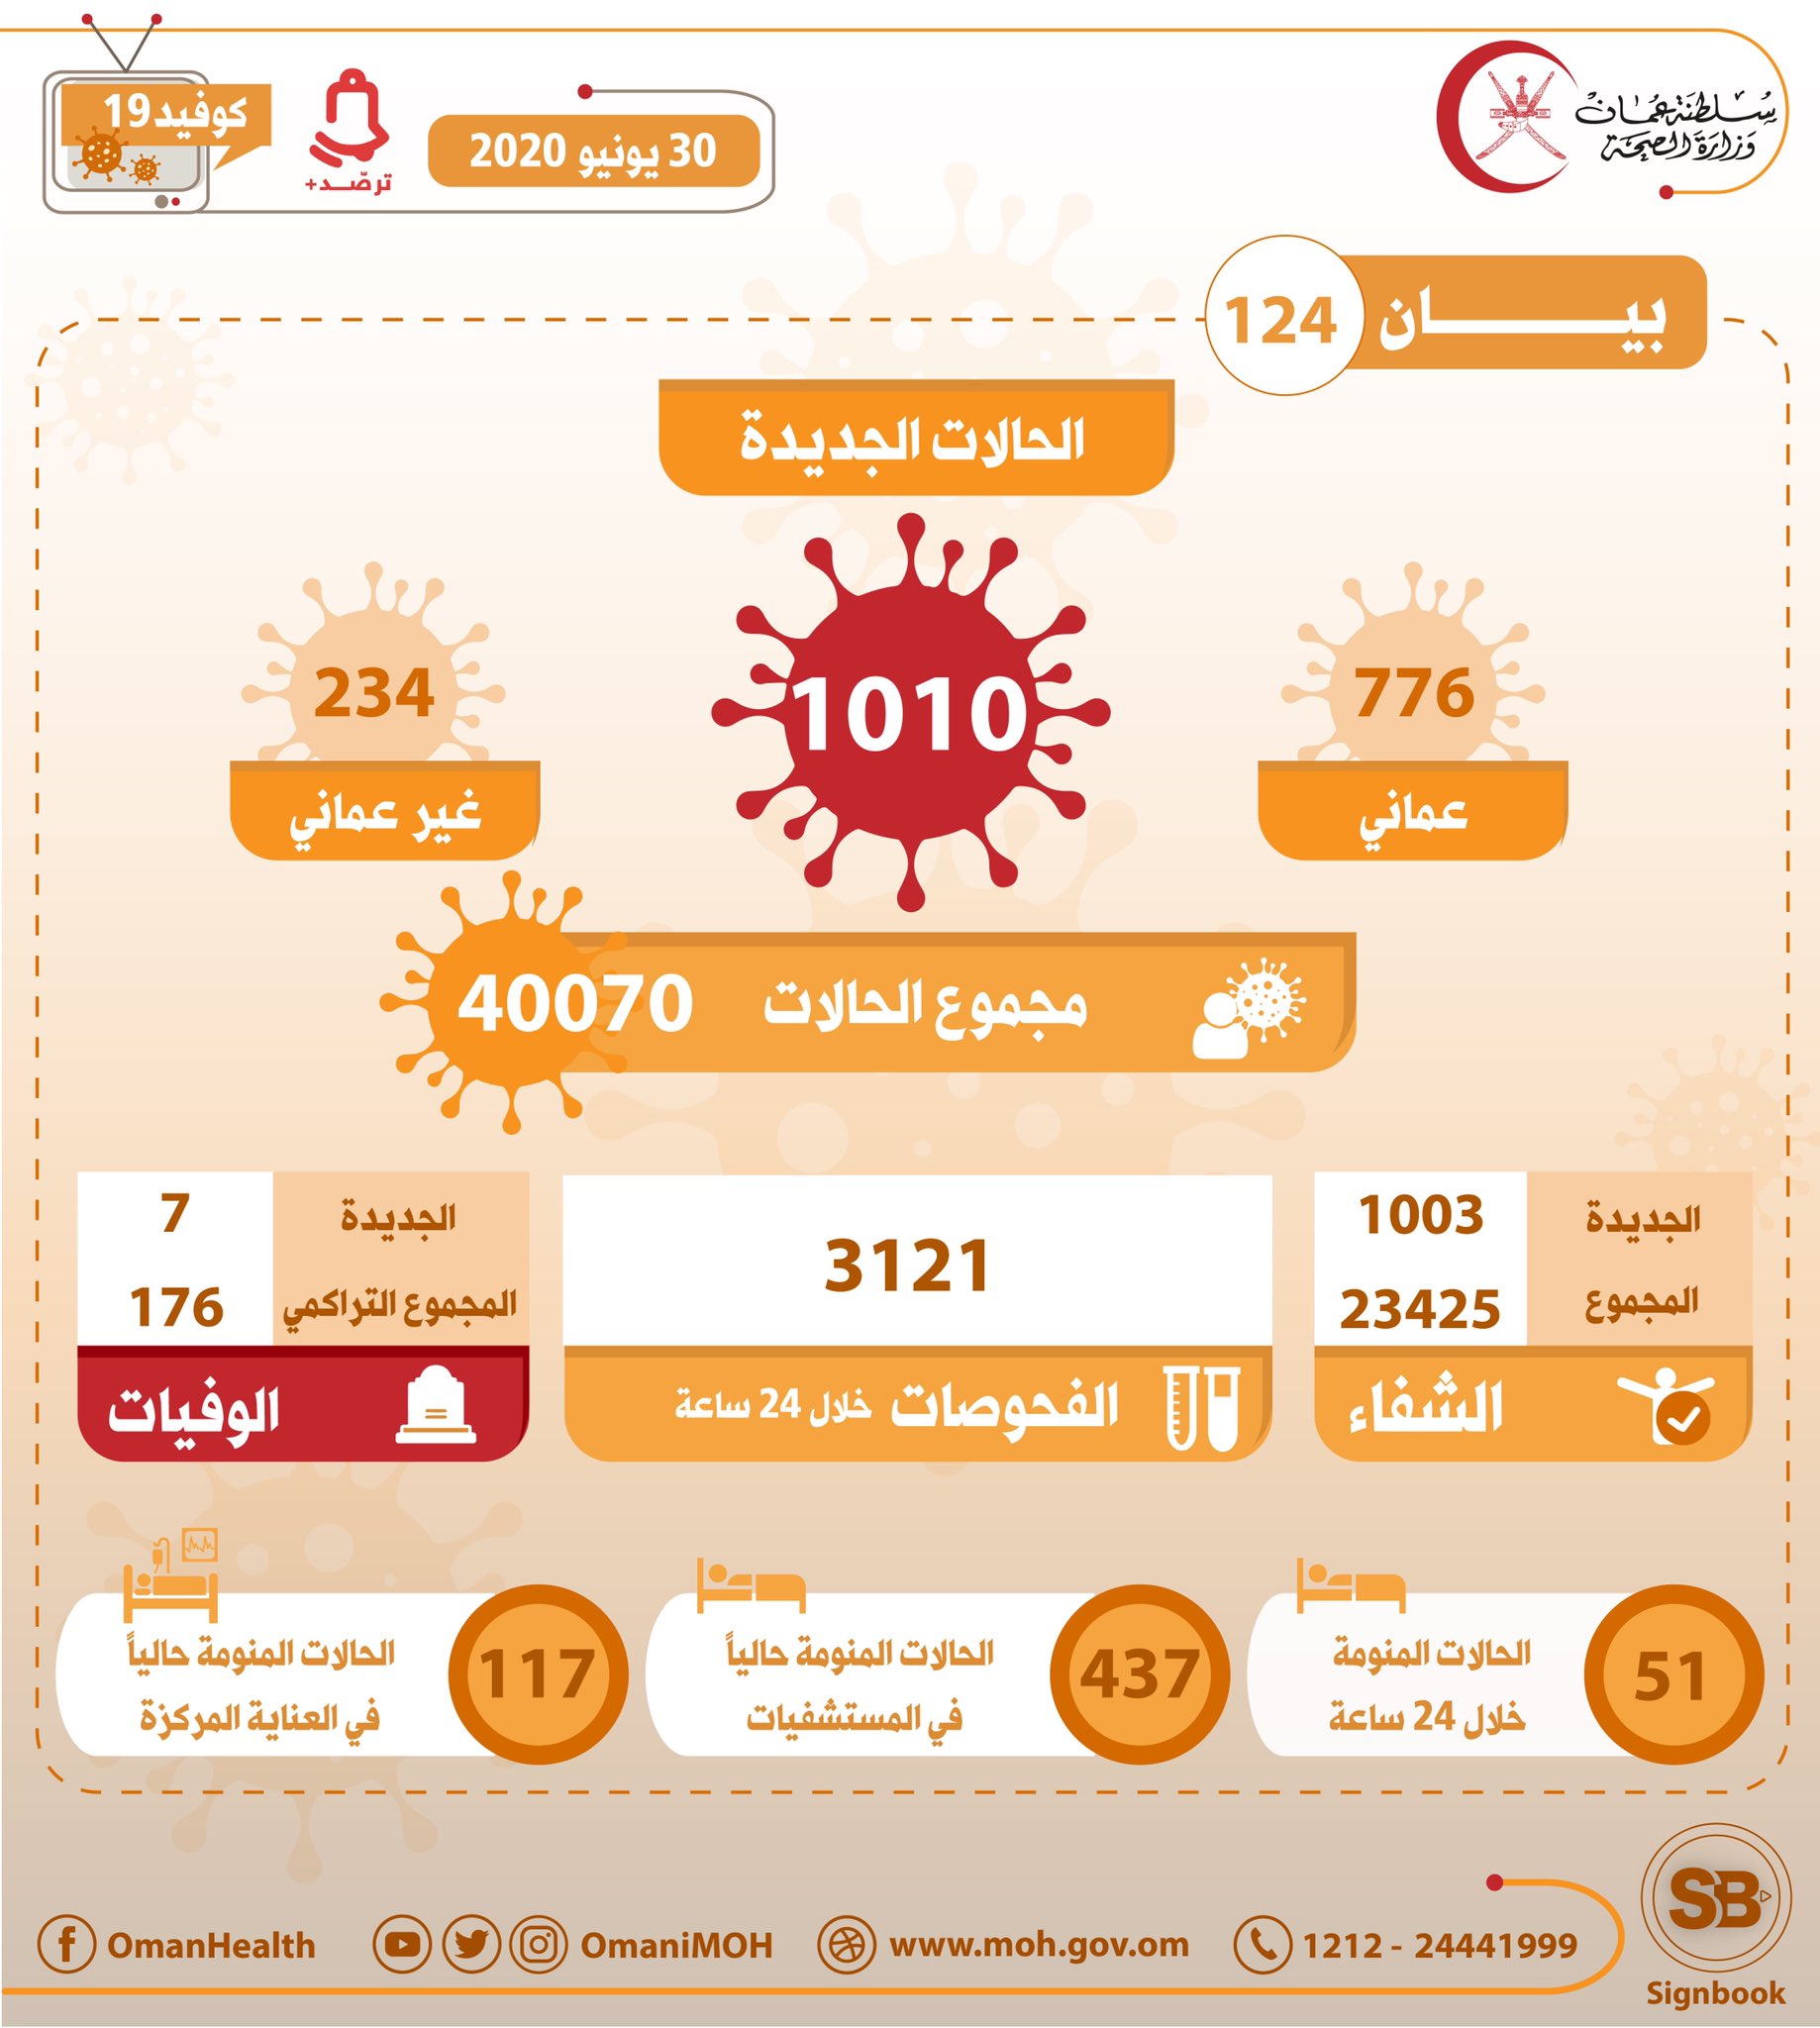 1010 حالة جديدة مسجلة في عمان ، مجموع الحالات 40 ، 007